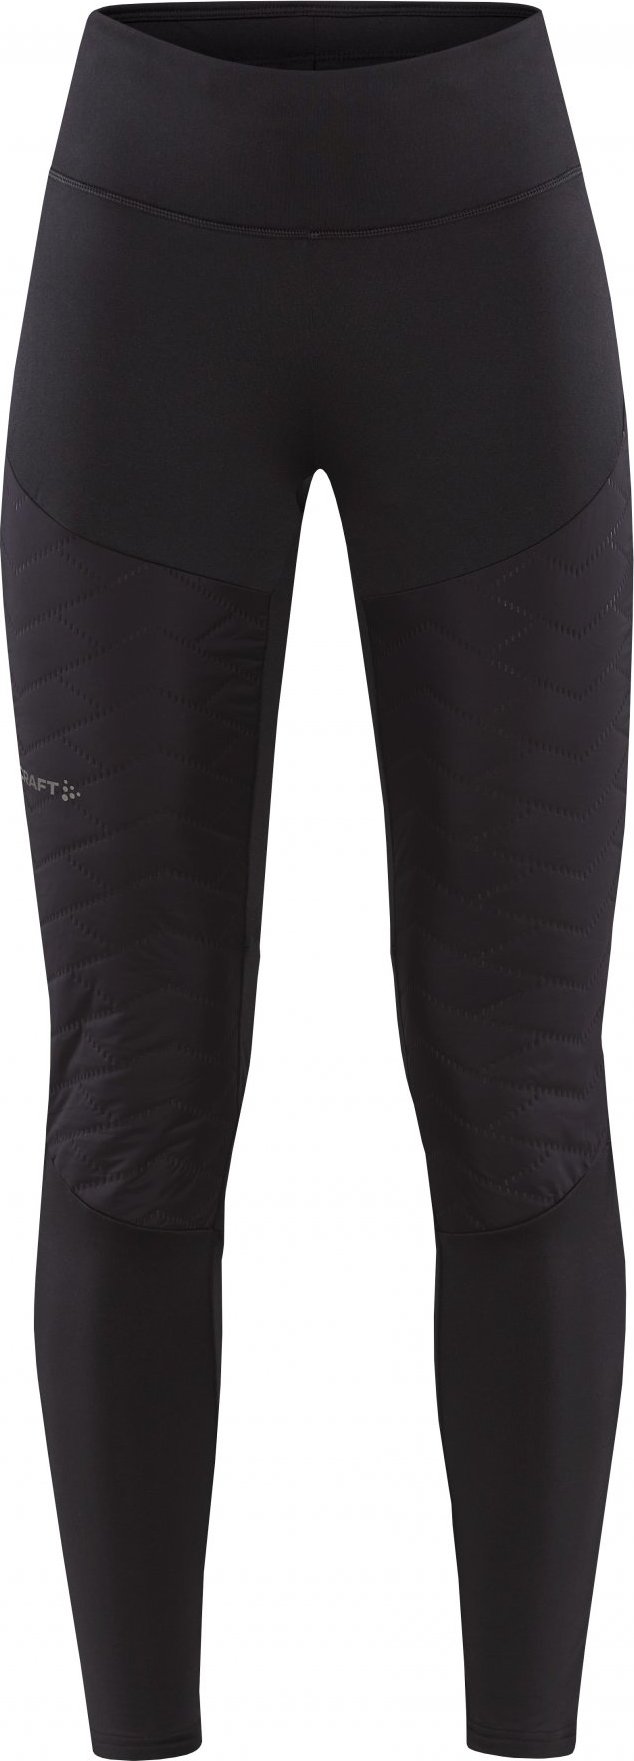 Dámské zateplené kalhoty CRAFT Adv Subz Tights 3 černé Velikost: XS